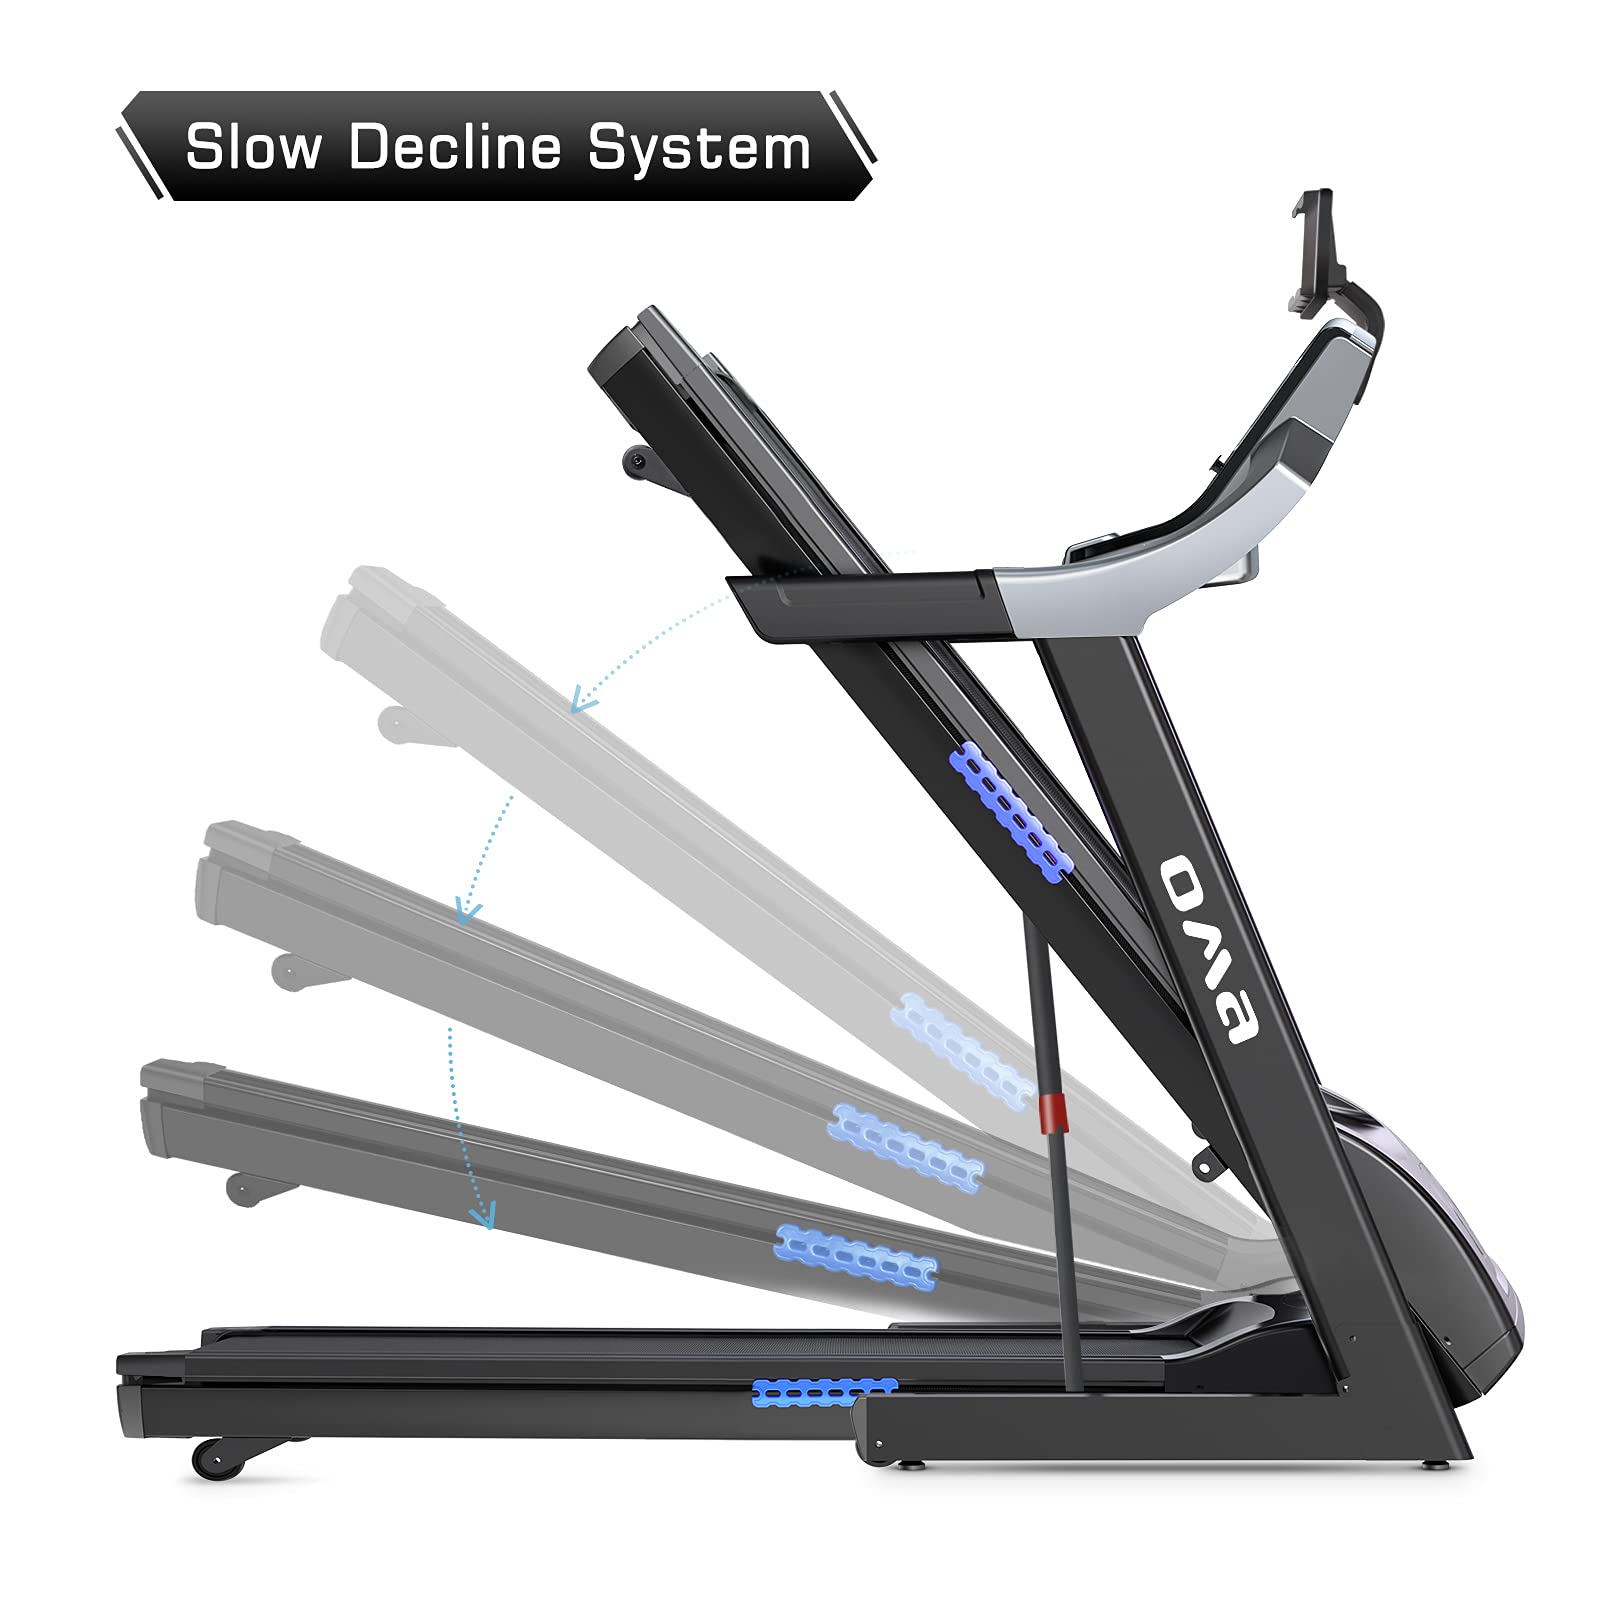 OMA Treadmill 5925CAI - 3.0 HP, 15% Incline, 300 LBS